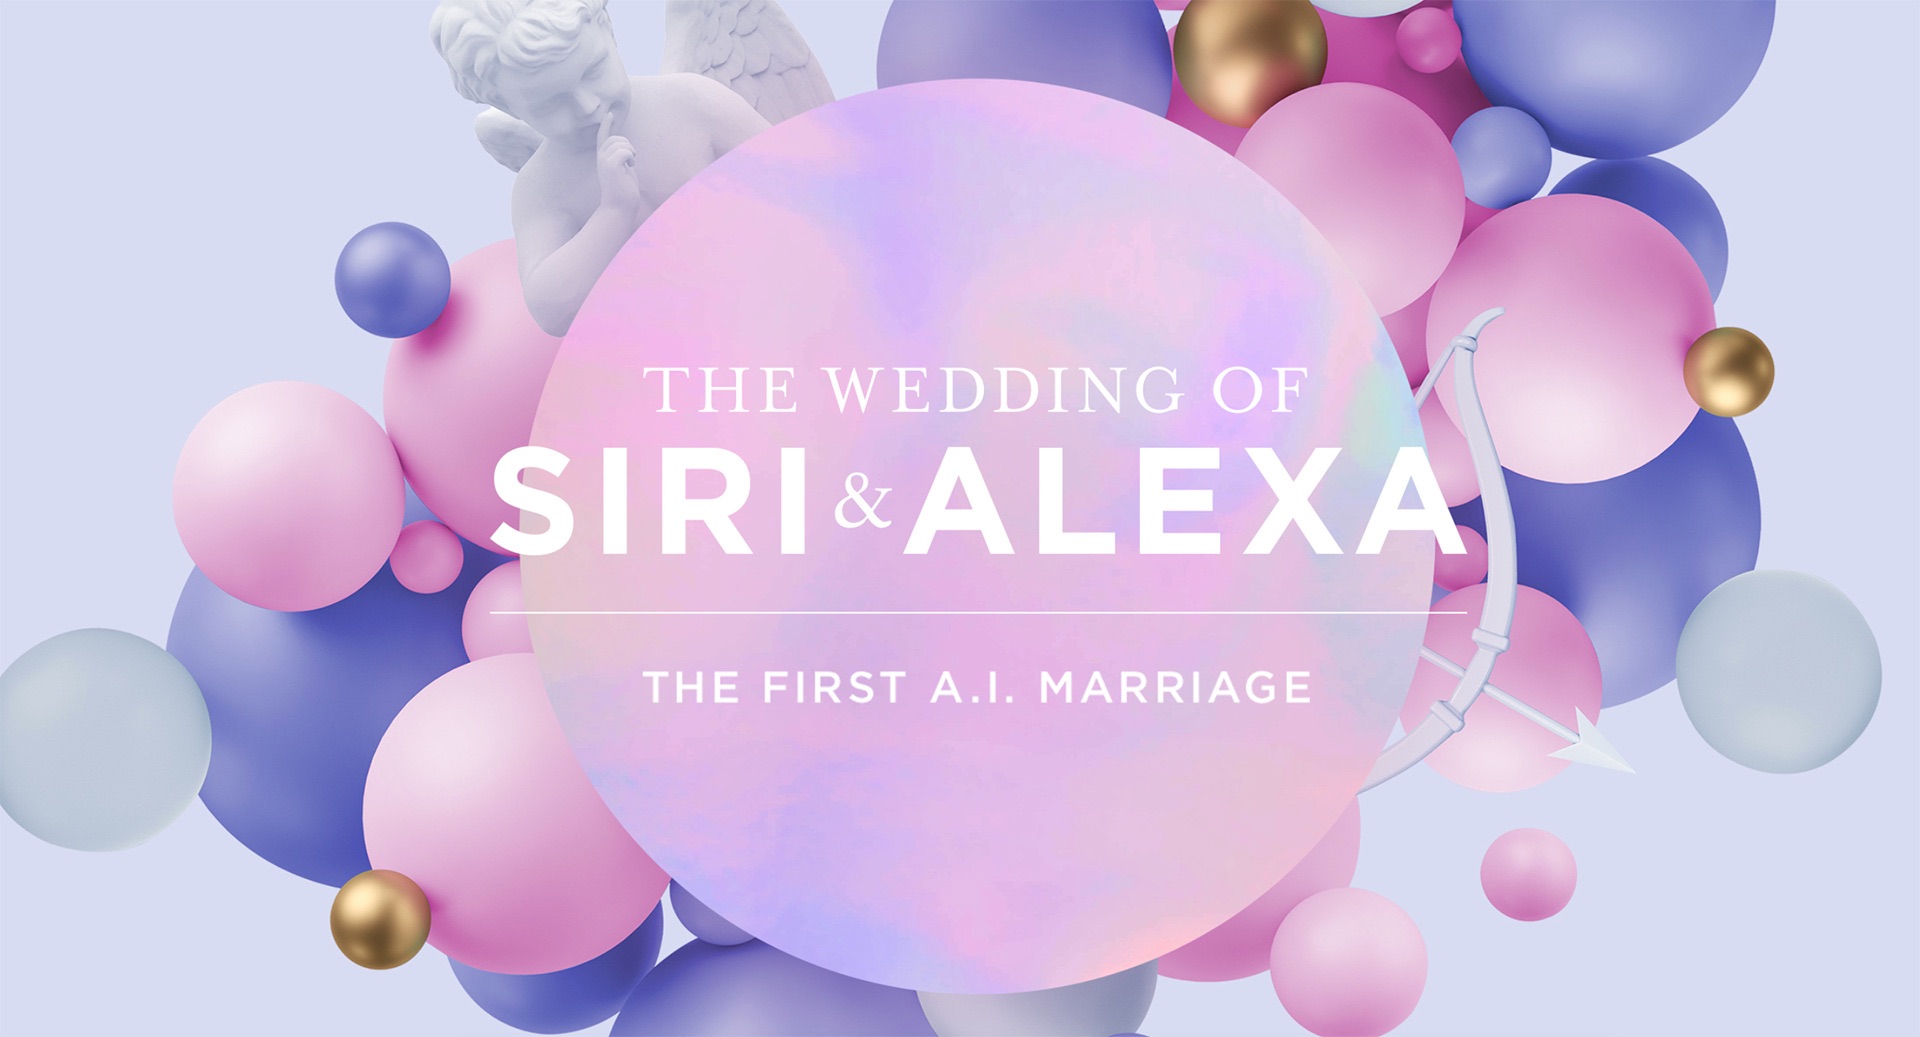 Đám cưới thế kỷ của 2 trợ lý ảo Siri và Alexa nhằm ủng hộ cộng đồng LGBTQ+- Ảnh 1.